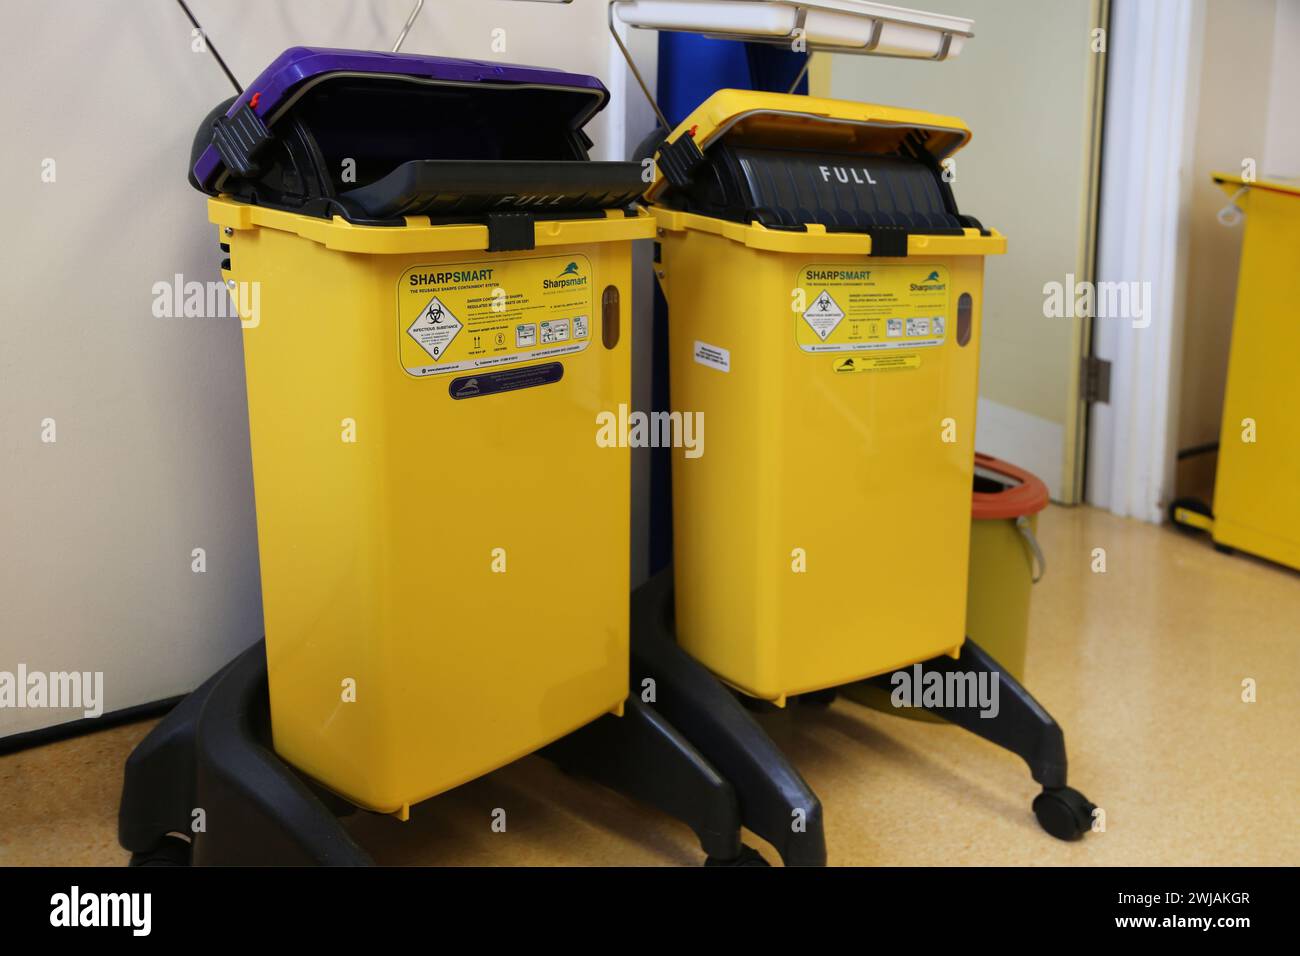 Poubelles pour objets pointus et déchets médicaux à l'hôpital Epsom Surrey Angleterre Banque D'Images